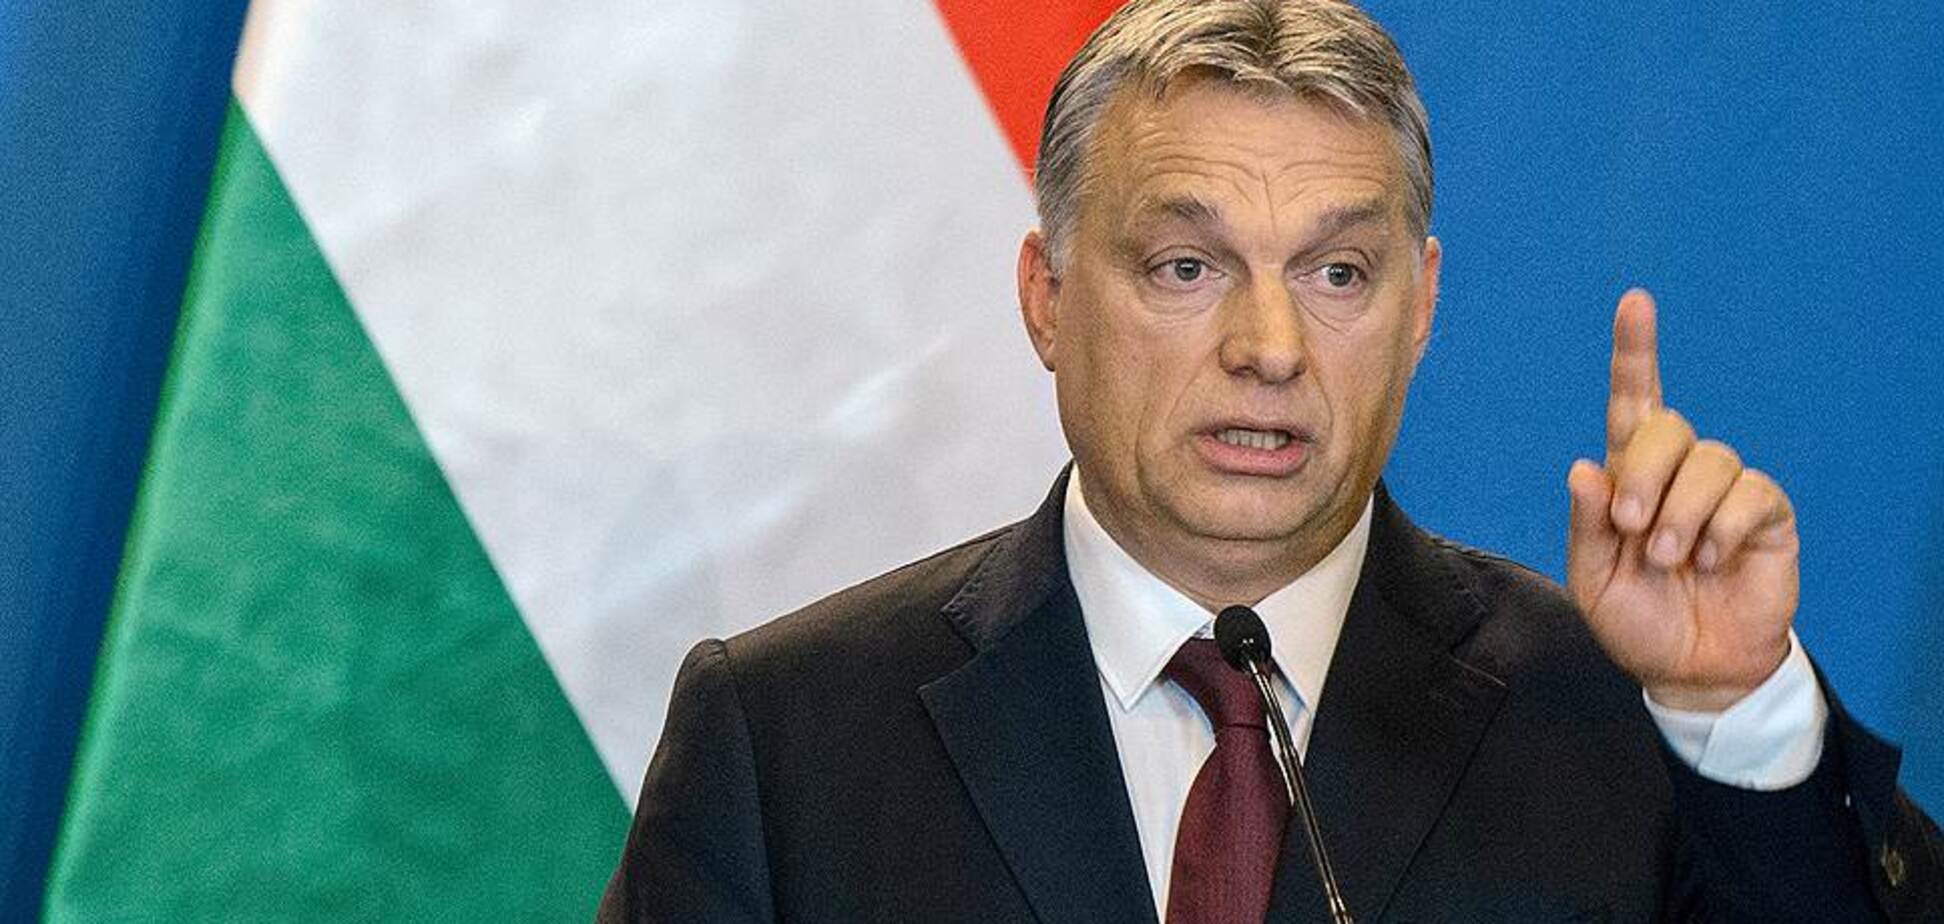  Сторонники 'друга' Путина победили на выборах в Венгрии